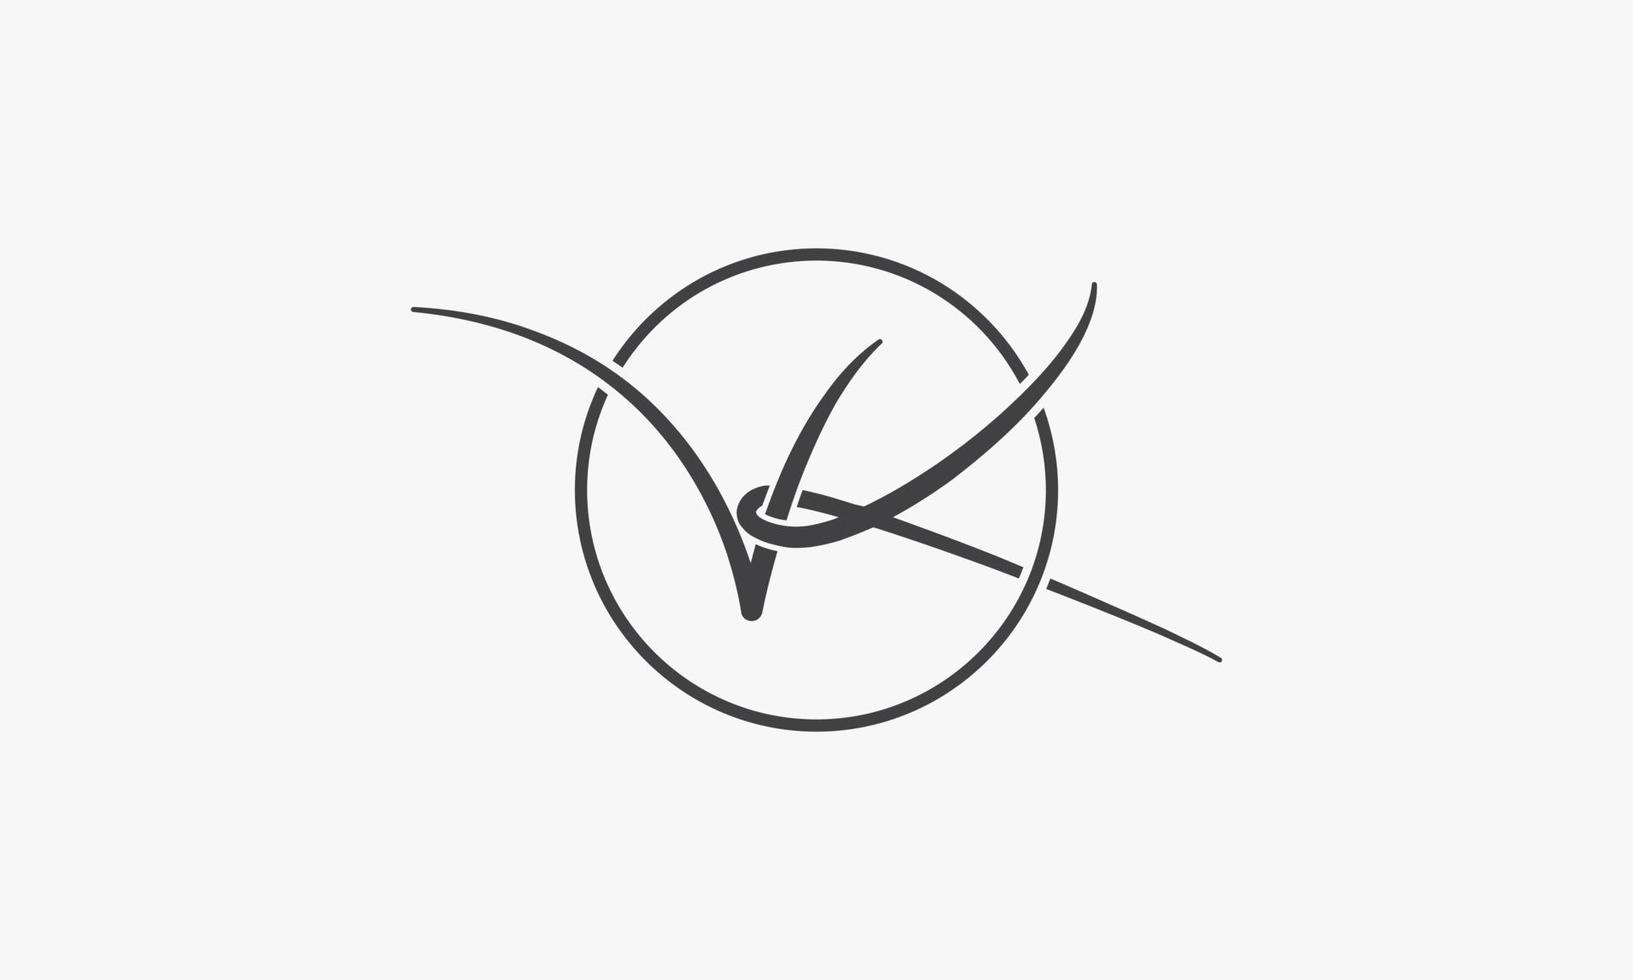 Letra de script vk logo con línea circular. vector